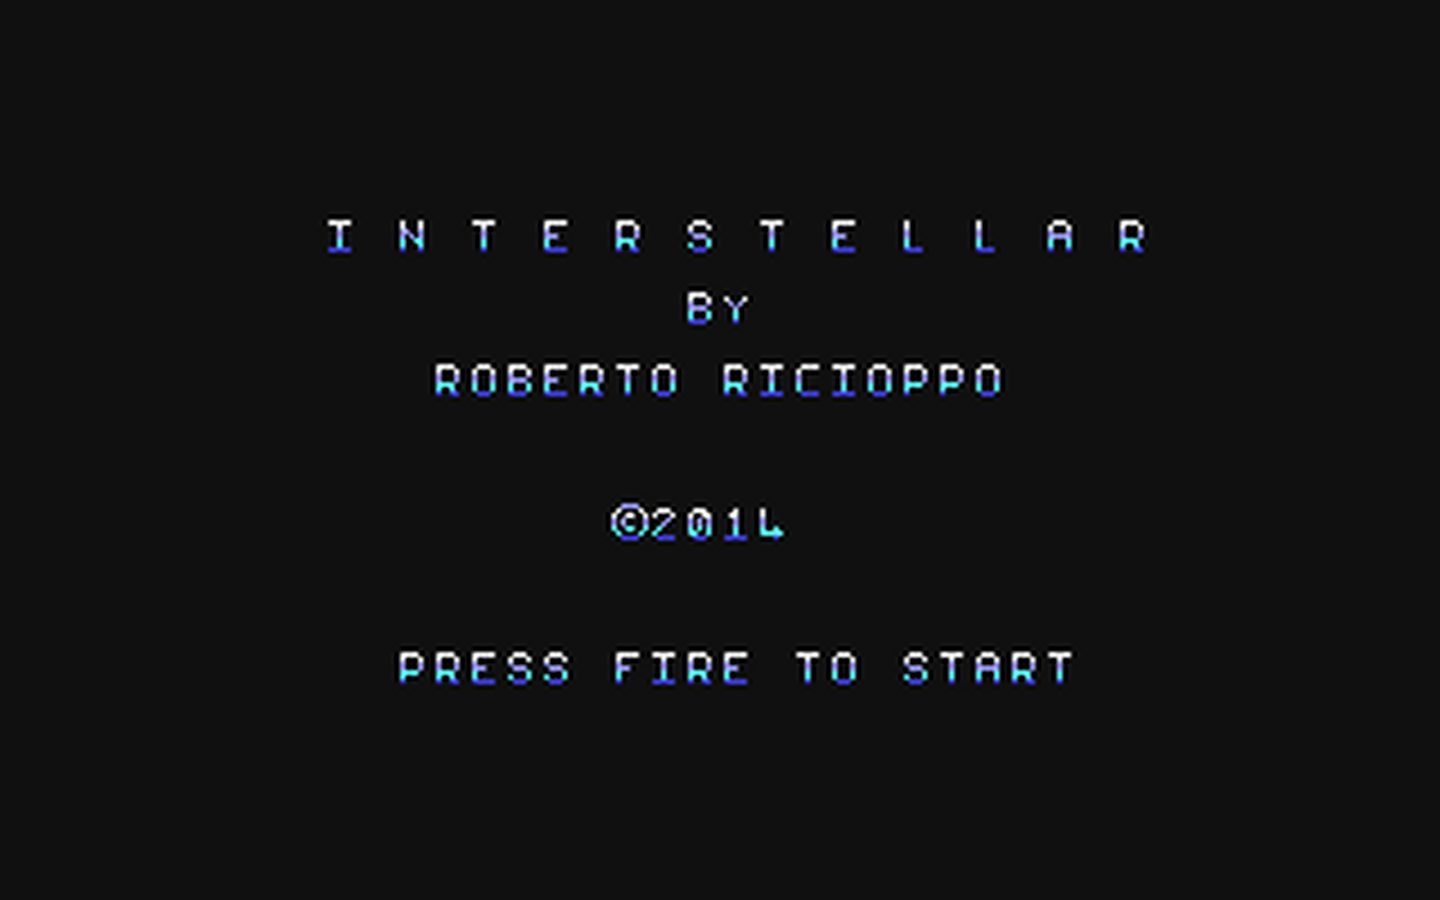 C64 GameBase Interstellar The_New_Dimension_(TND) 2014